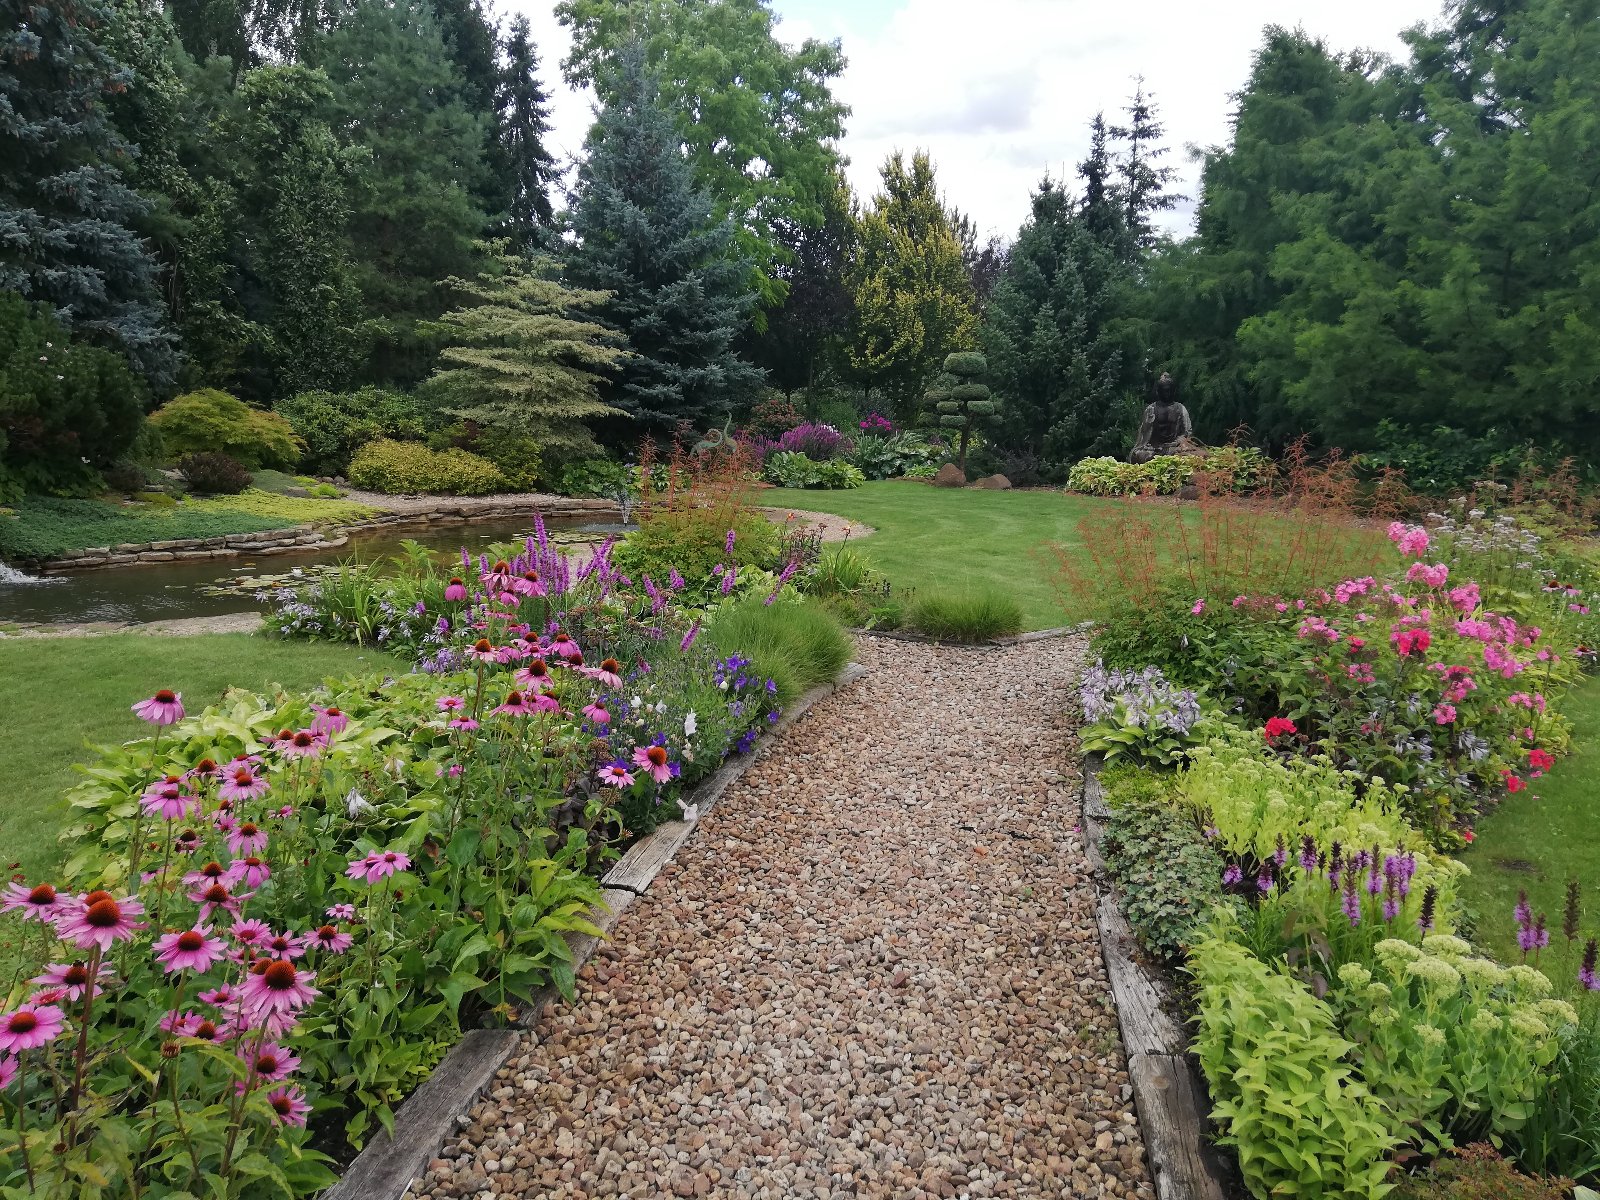 1 miejsce Pani Teresa Dryl-Rydzyńska (Rada Osiedla Krzyżowniki-Smochowice) na pierwszym planie widać ukwieconą alejkę ogrodową z kolorowymi ,różowymi,fioletowymi i czerwonymi kwiatami, królują fioletowe liatry kłosowe, różowe jeżówki,różowe floksy, zielone rozchodniki wyniosłe, w oddali widać oczko wodne z liliami wodnymi i żurawie jako małe ozdoby ogrodowe ,posąg Buddy i rabaty z krzewów ozdobnych i wyższych roślin iglastych.